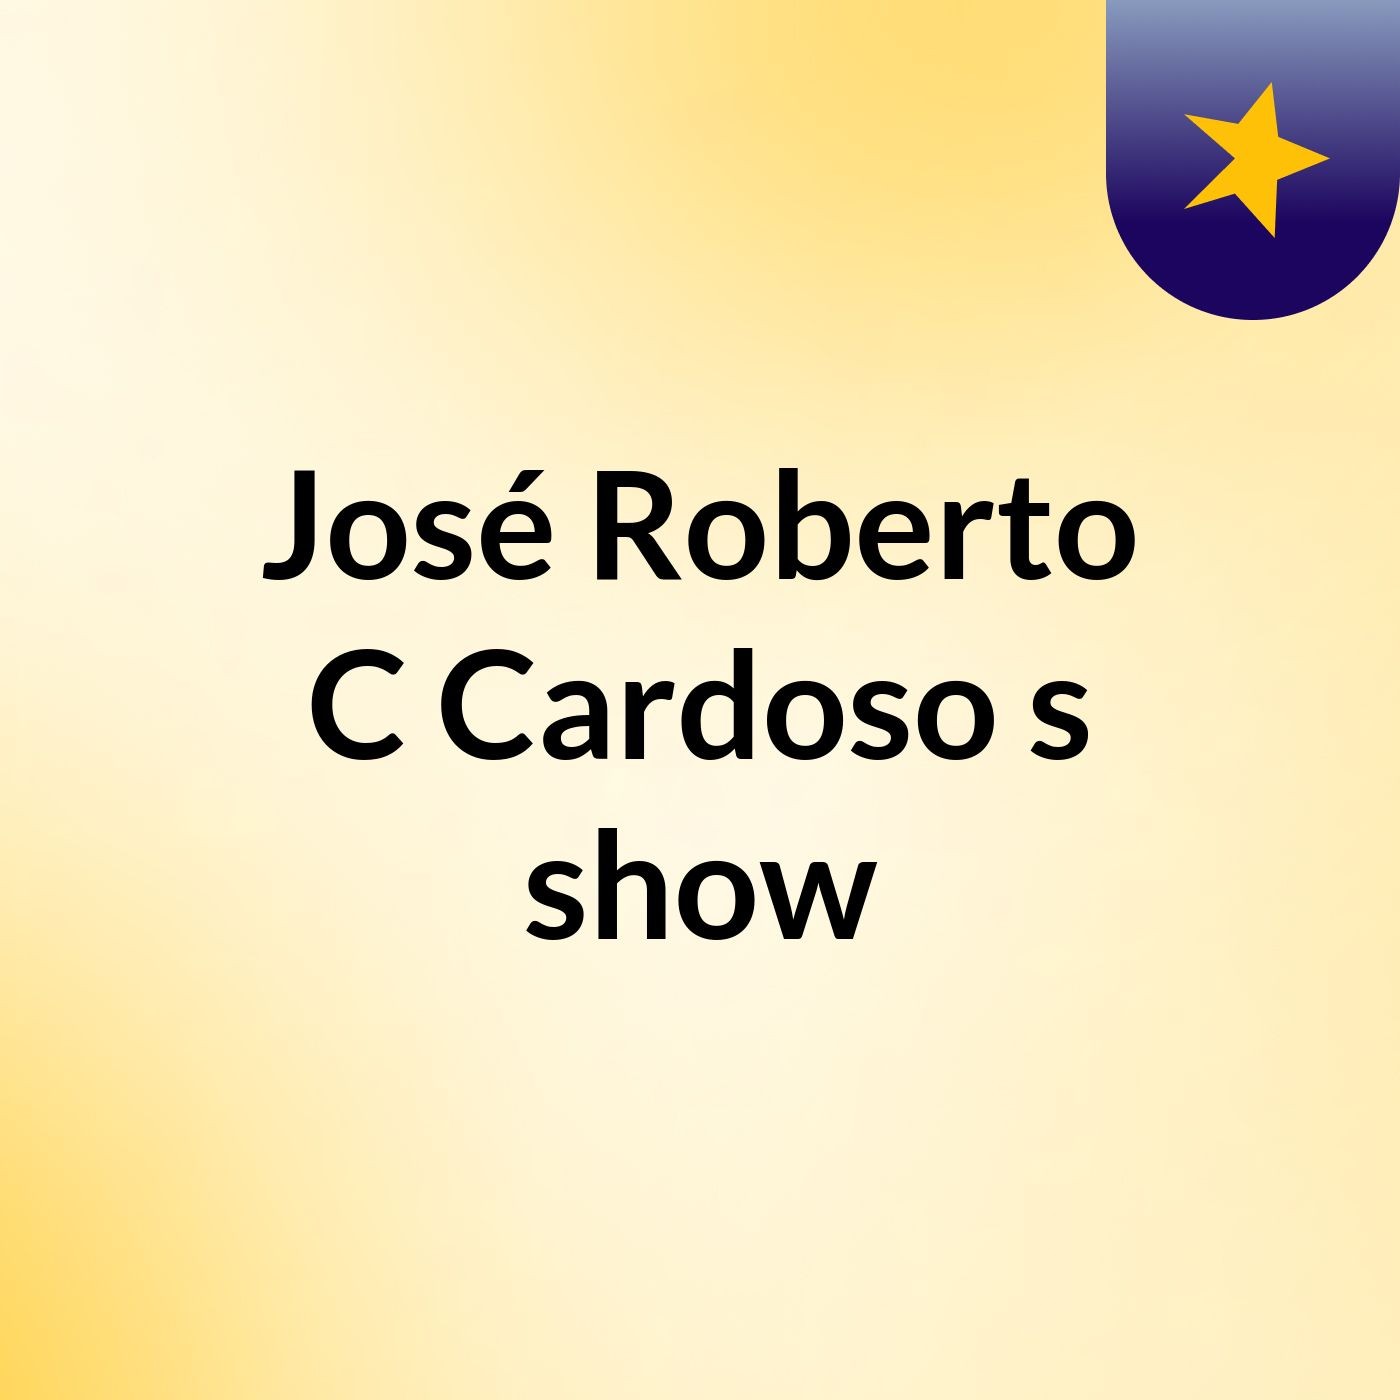 José Roberto C Cardoso's show